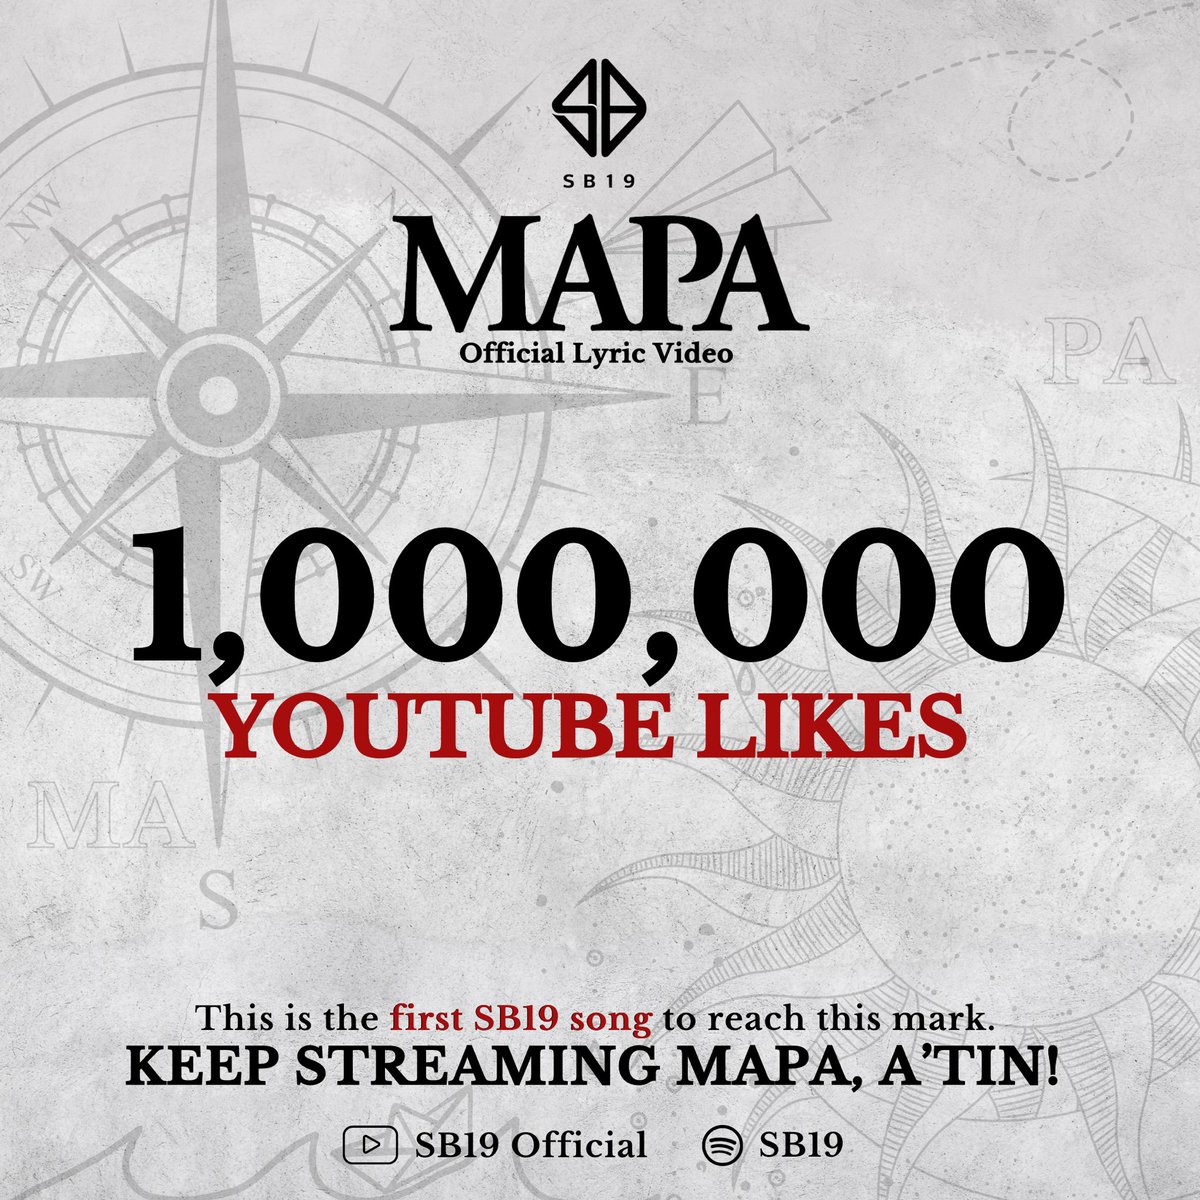 [ MAPA HITS 1 MILLION LIKES! ] Sa’n man mapunta, alam natin kung sa’n tayo nagmula. Congratulations to MAPA Lyric Video as the first SB19 song to reach this 1M likes mark. We are so proud of you five. 👏🏼 Keep streaming MAPA! 💙 #SB19MAPA1MLikes #MAPA_SB19 #SB19 @SB19Official